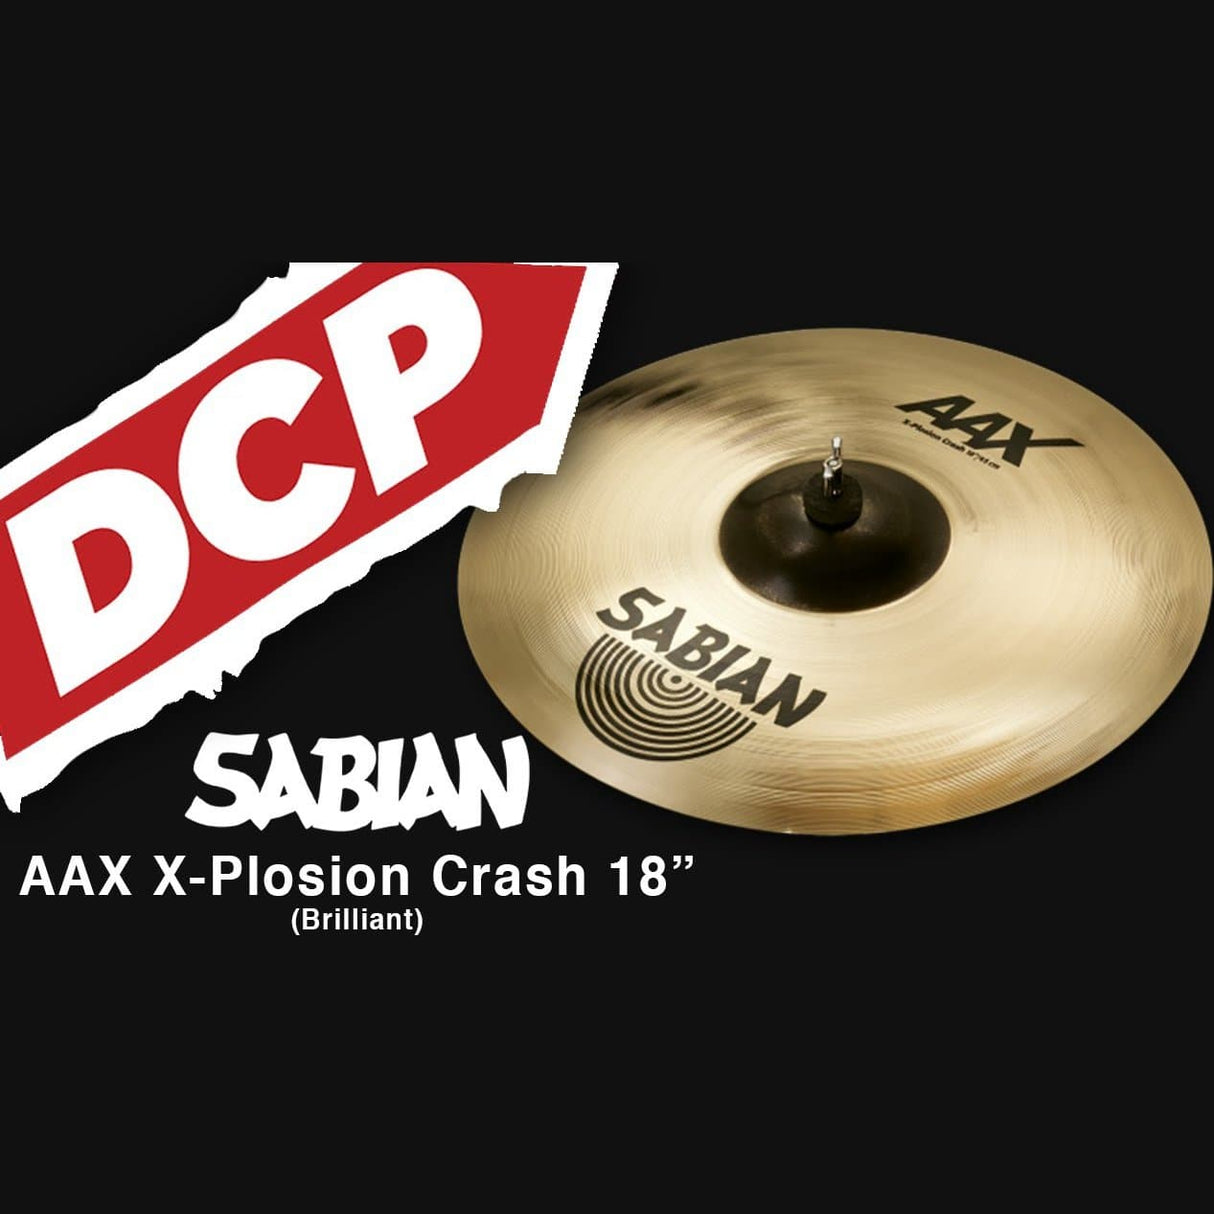 Sabian AAX X-Plosion Crash Cymbal 18" Brilliant